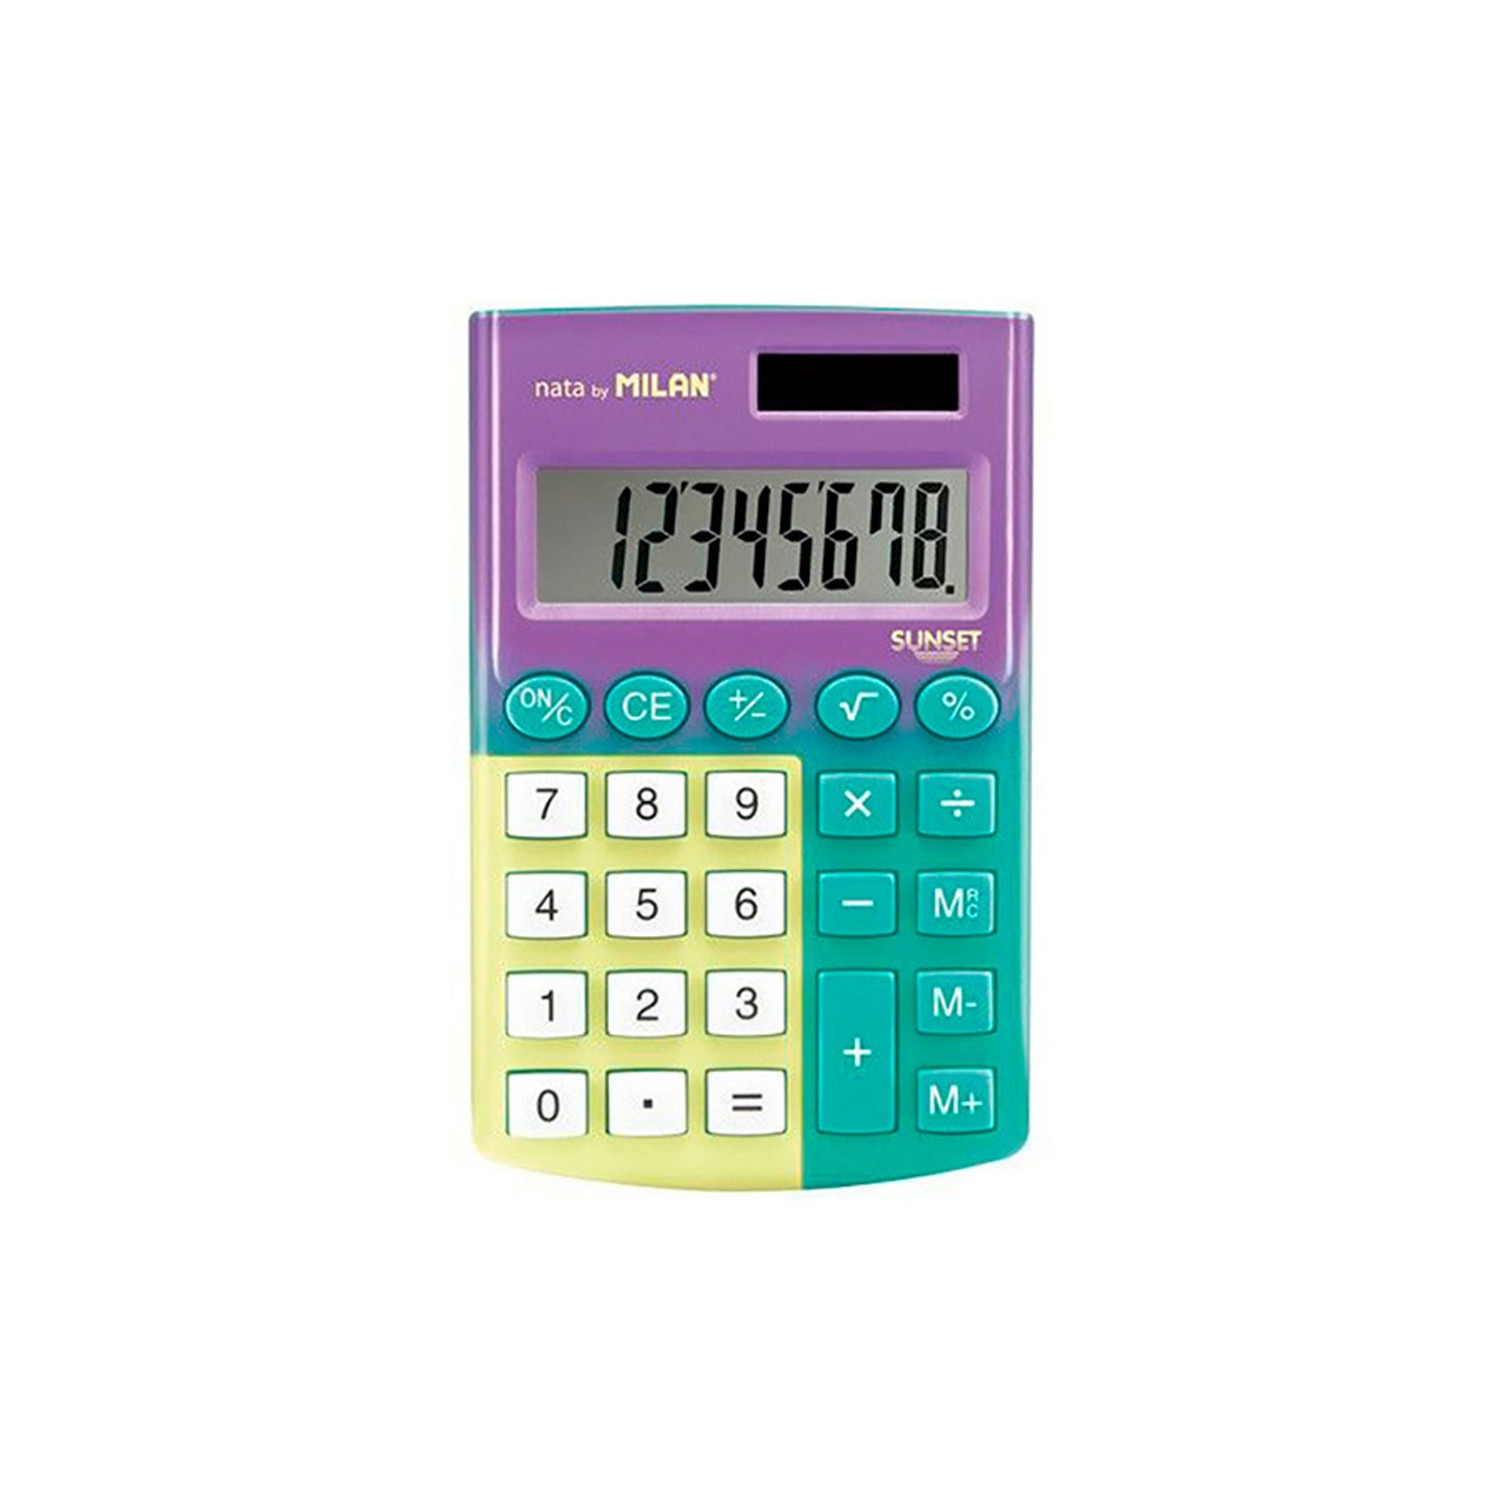 Blister calculadora pocket sunset 8 digitos milan